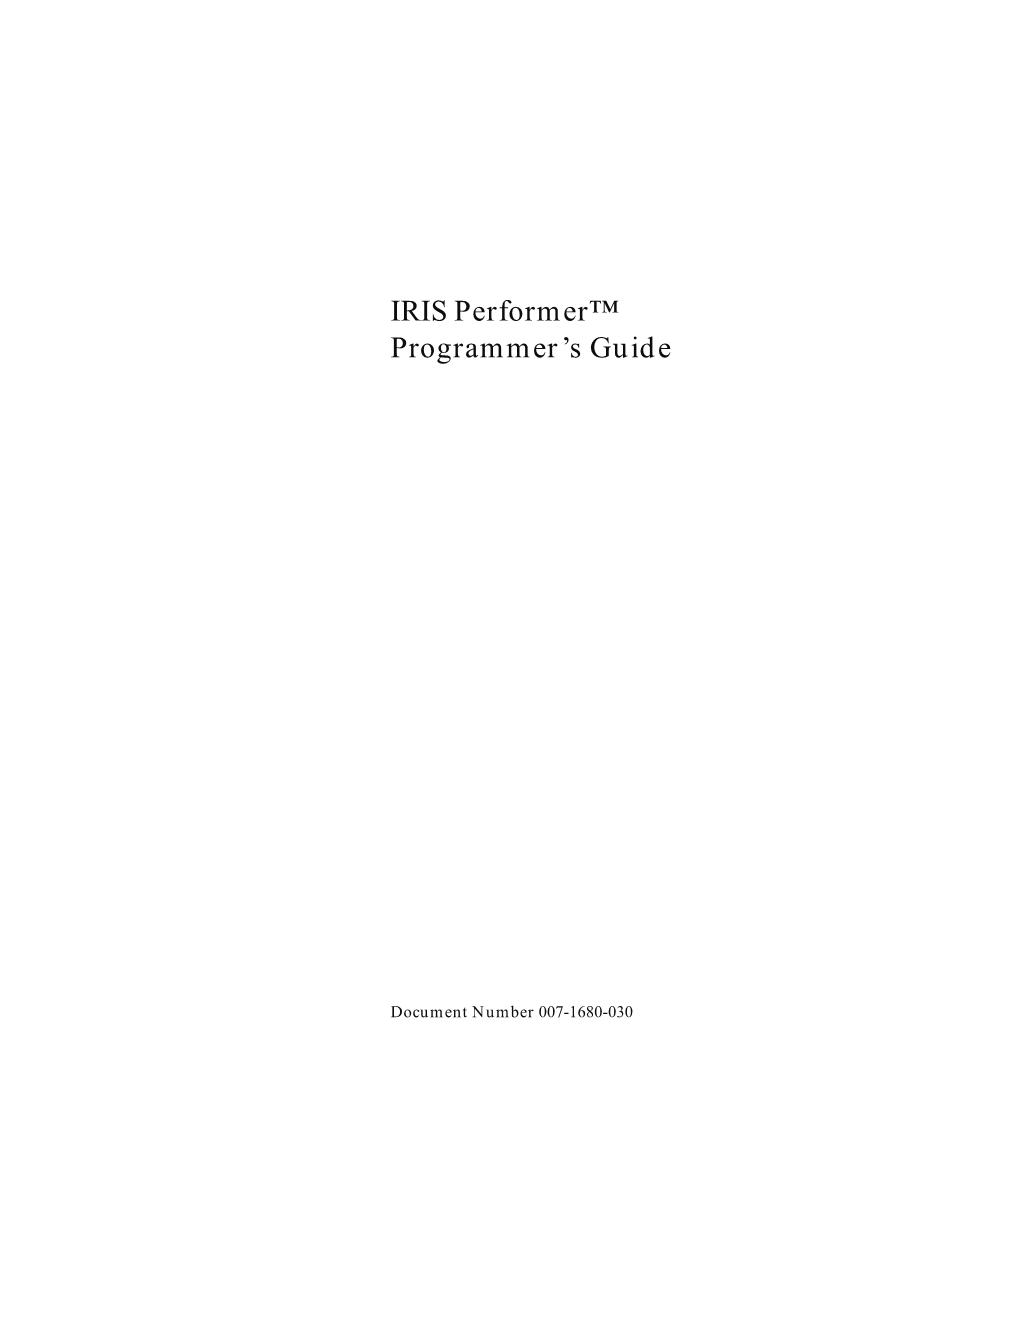 IRIS Performer™ Programmer's Guide